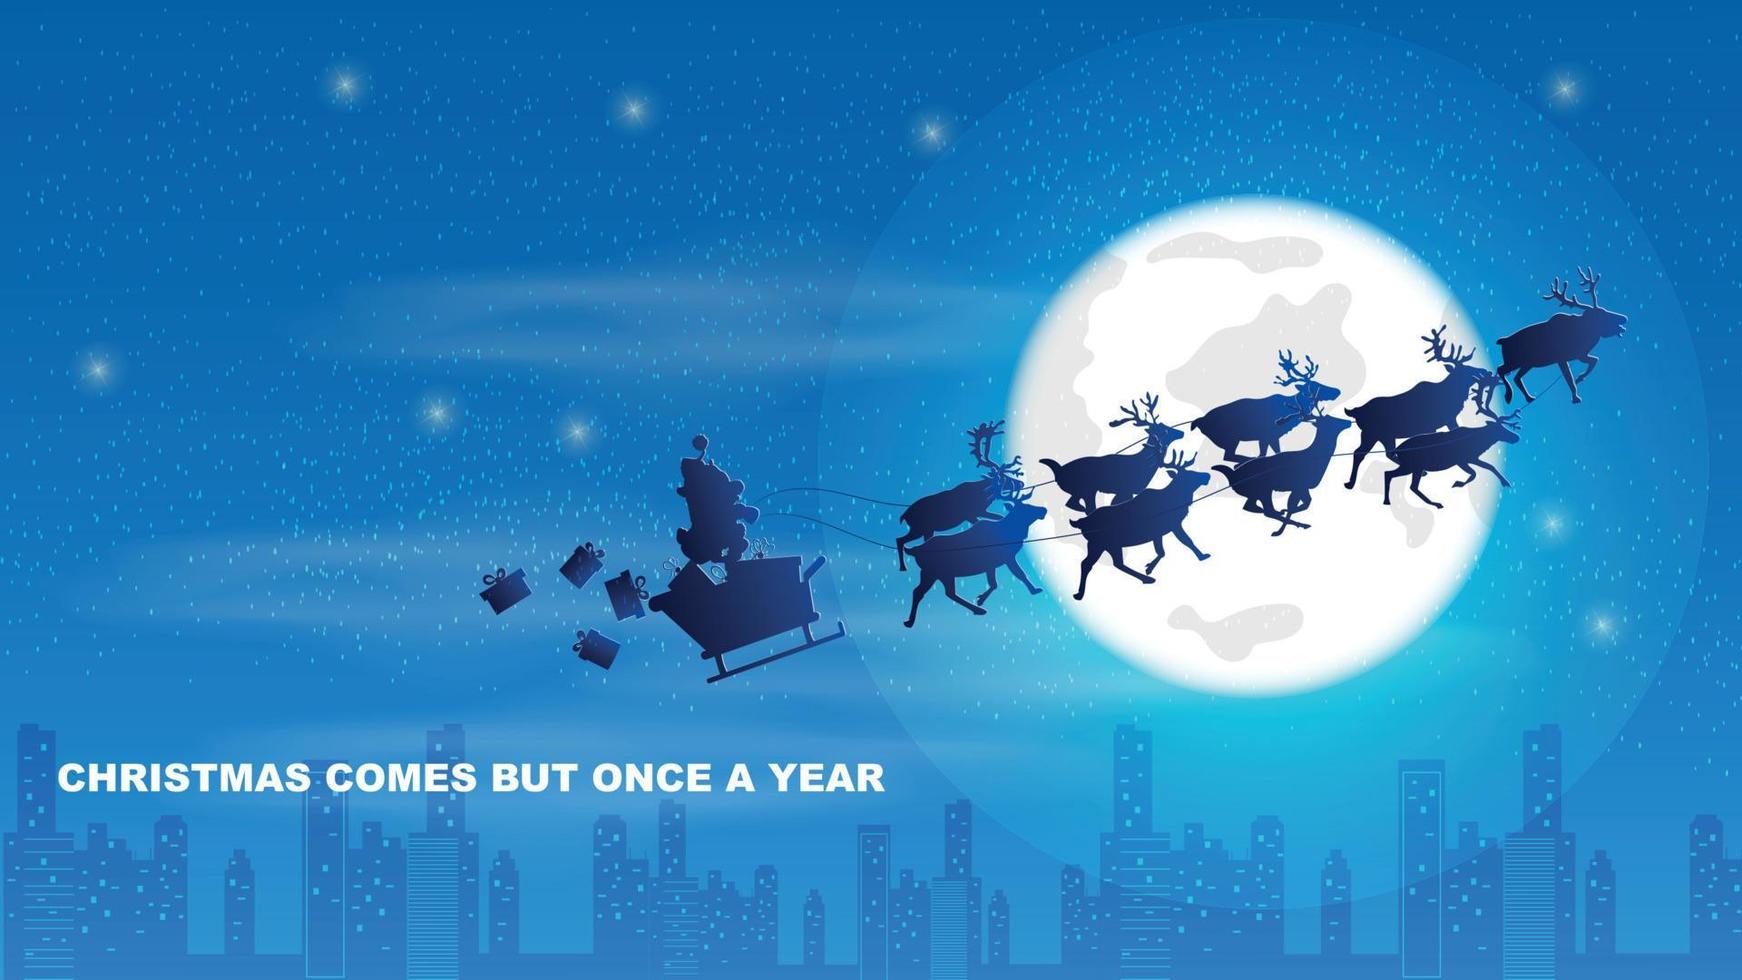 ilustración de navidad y año nuevo un equipo de renos lleva a santaclaus en el cielo nocturno contra el fondo de la luna sobre la ciudad nocturna vector